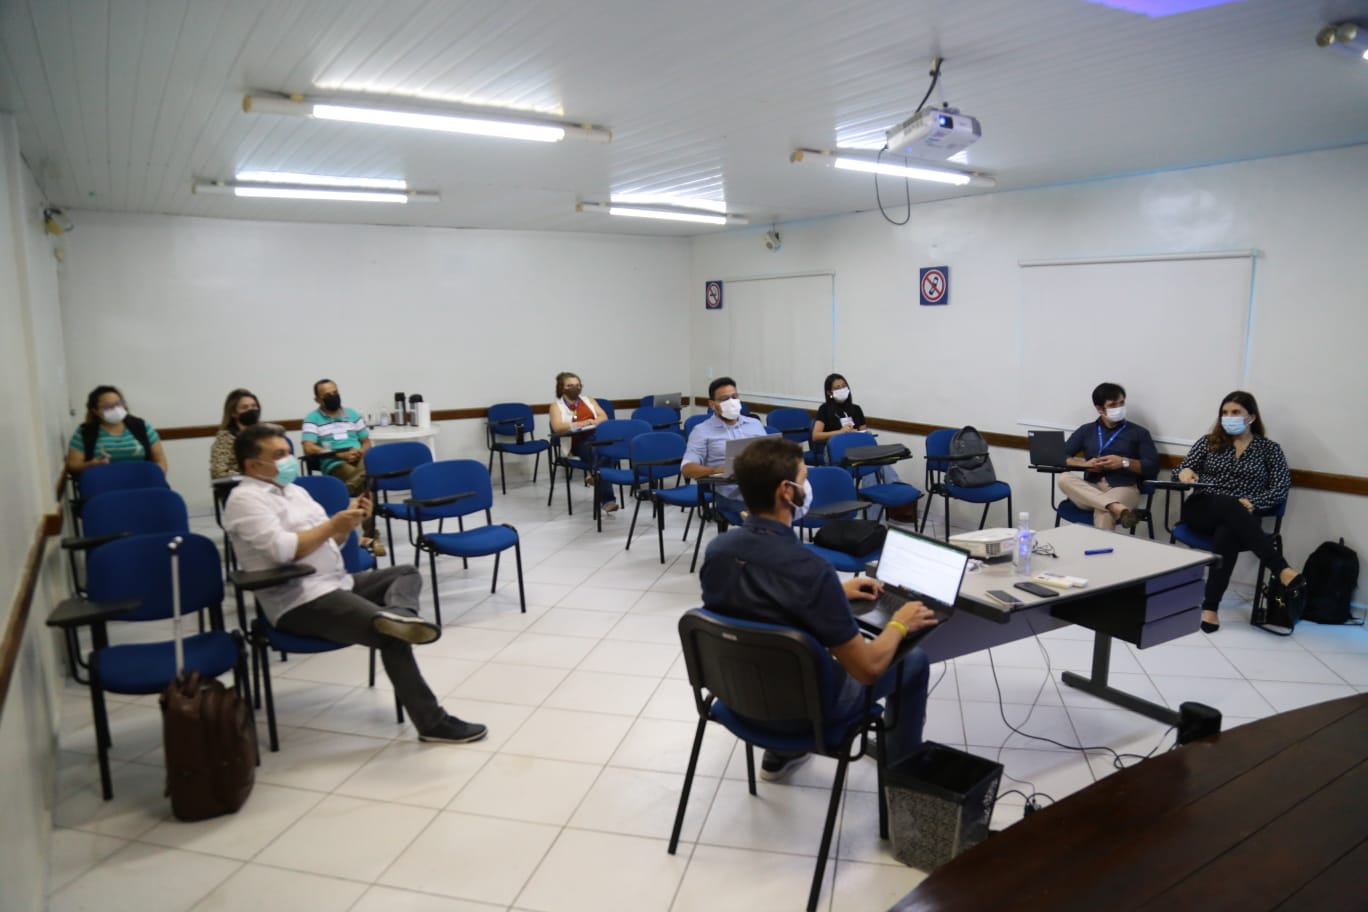 "Mossoró Empreendedora": Em parceria com o Sebrae, SEDINT realiza oficina voltada ao empreendedorismo no município